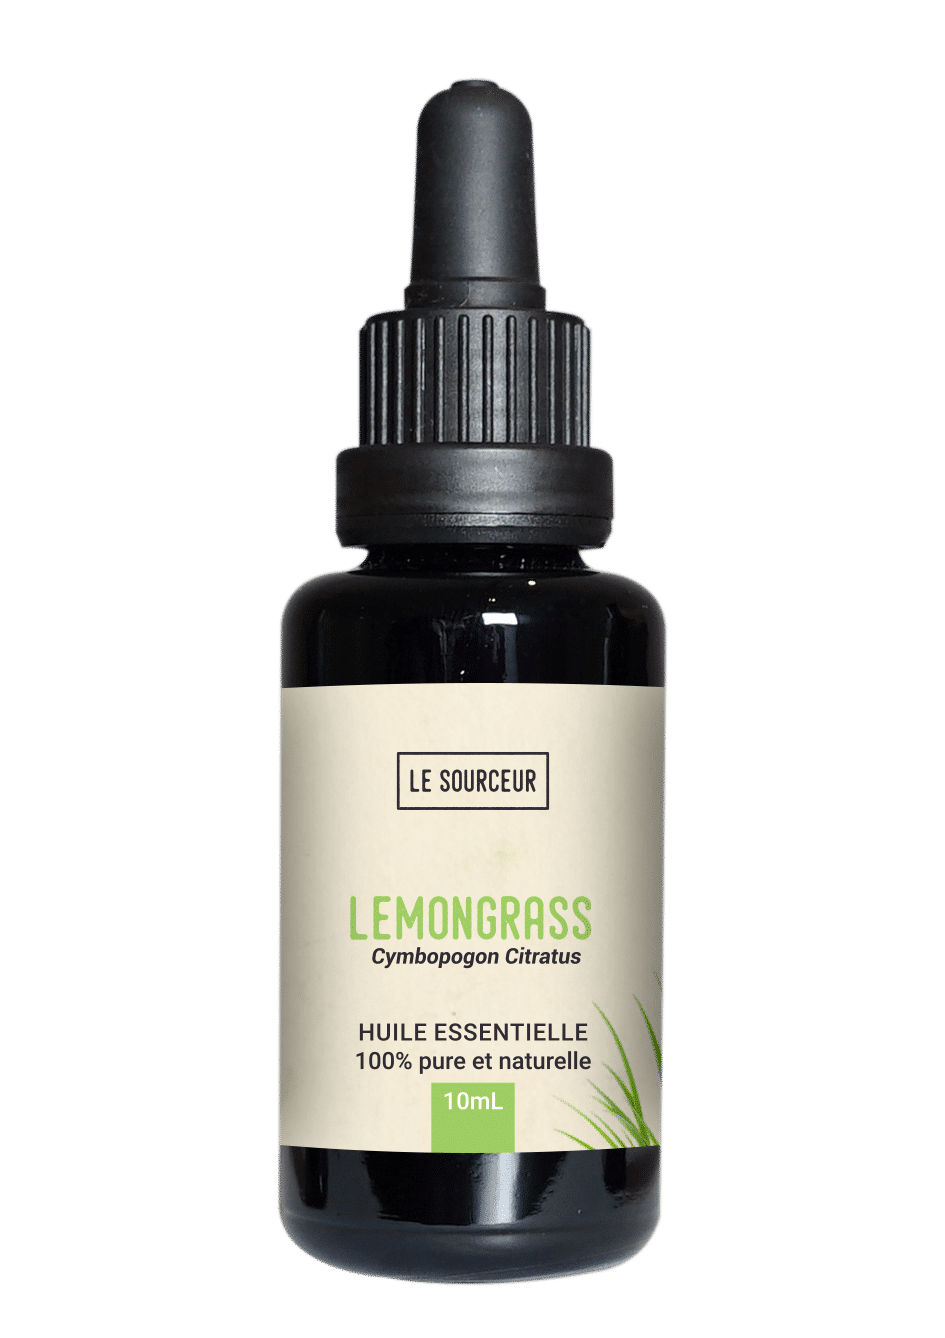 Bottle of essential oil of Lemongrass